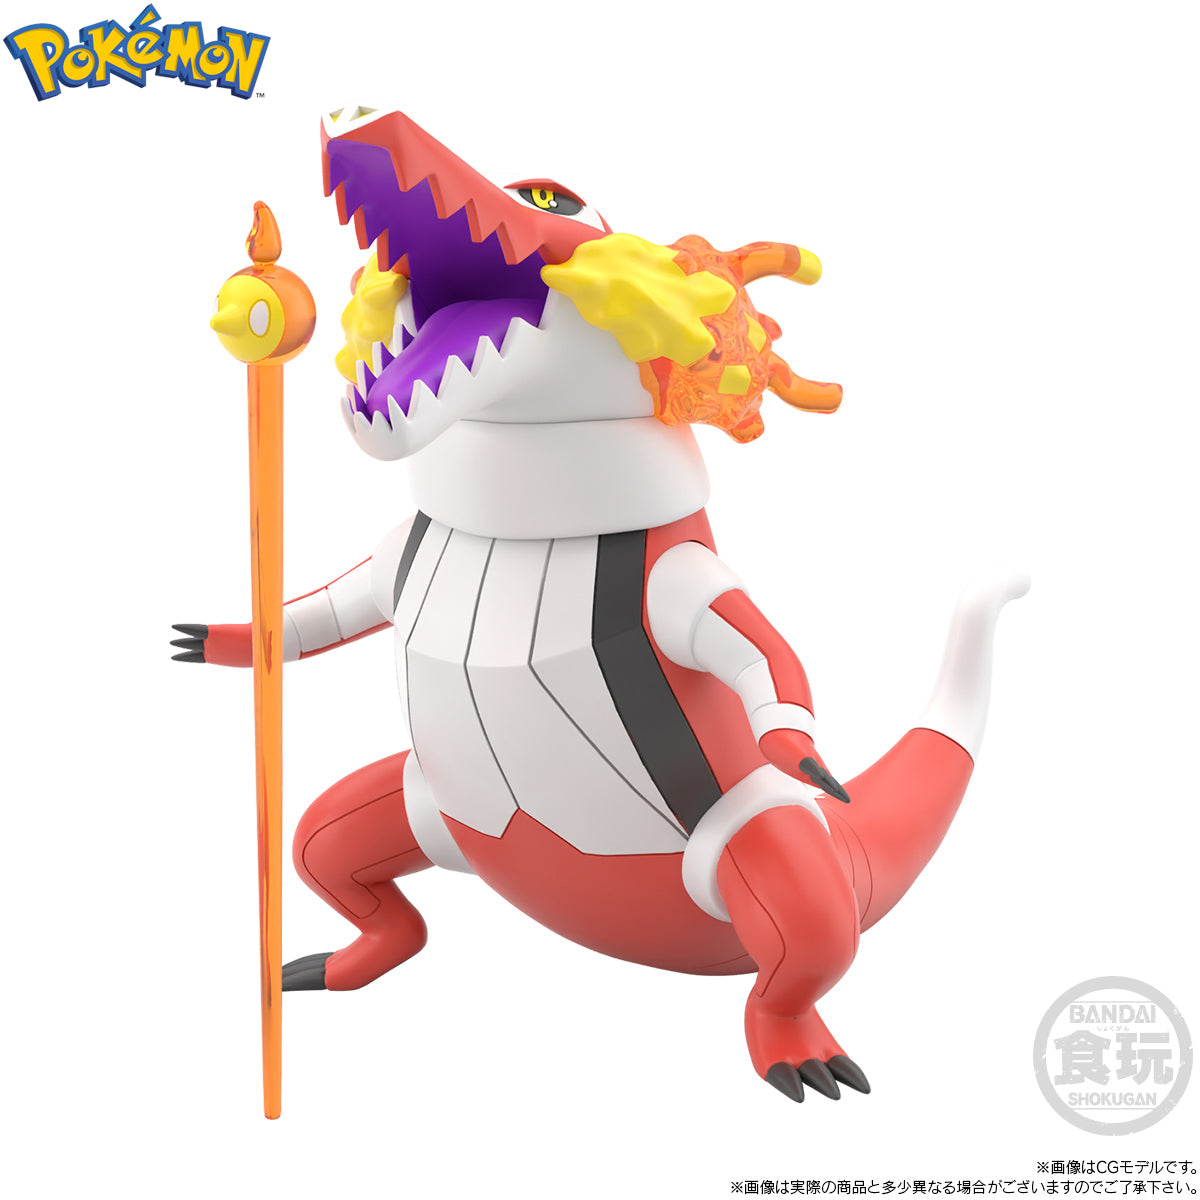 Bandai - Shokugan - Pokemon Scale World Galar Region - Nemona & Skeledirge & Pawmot - Marvelous Toys